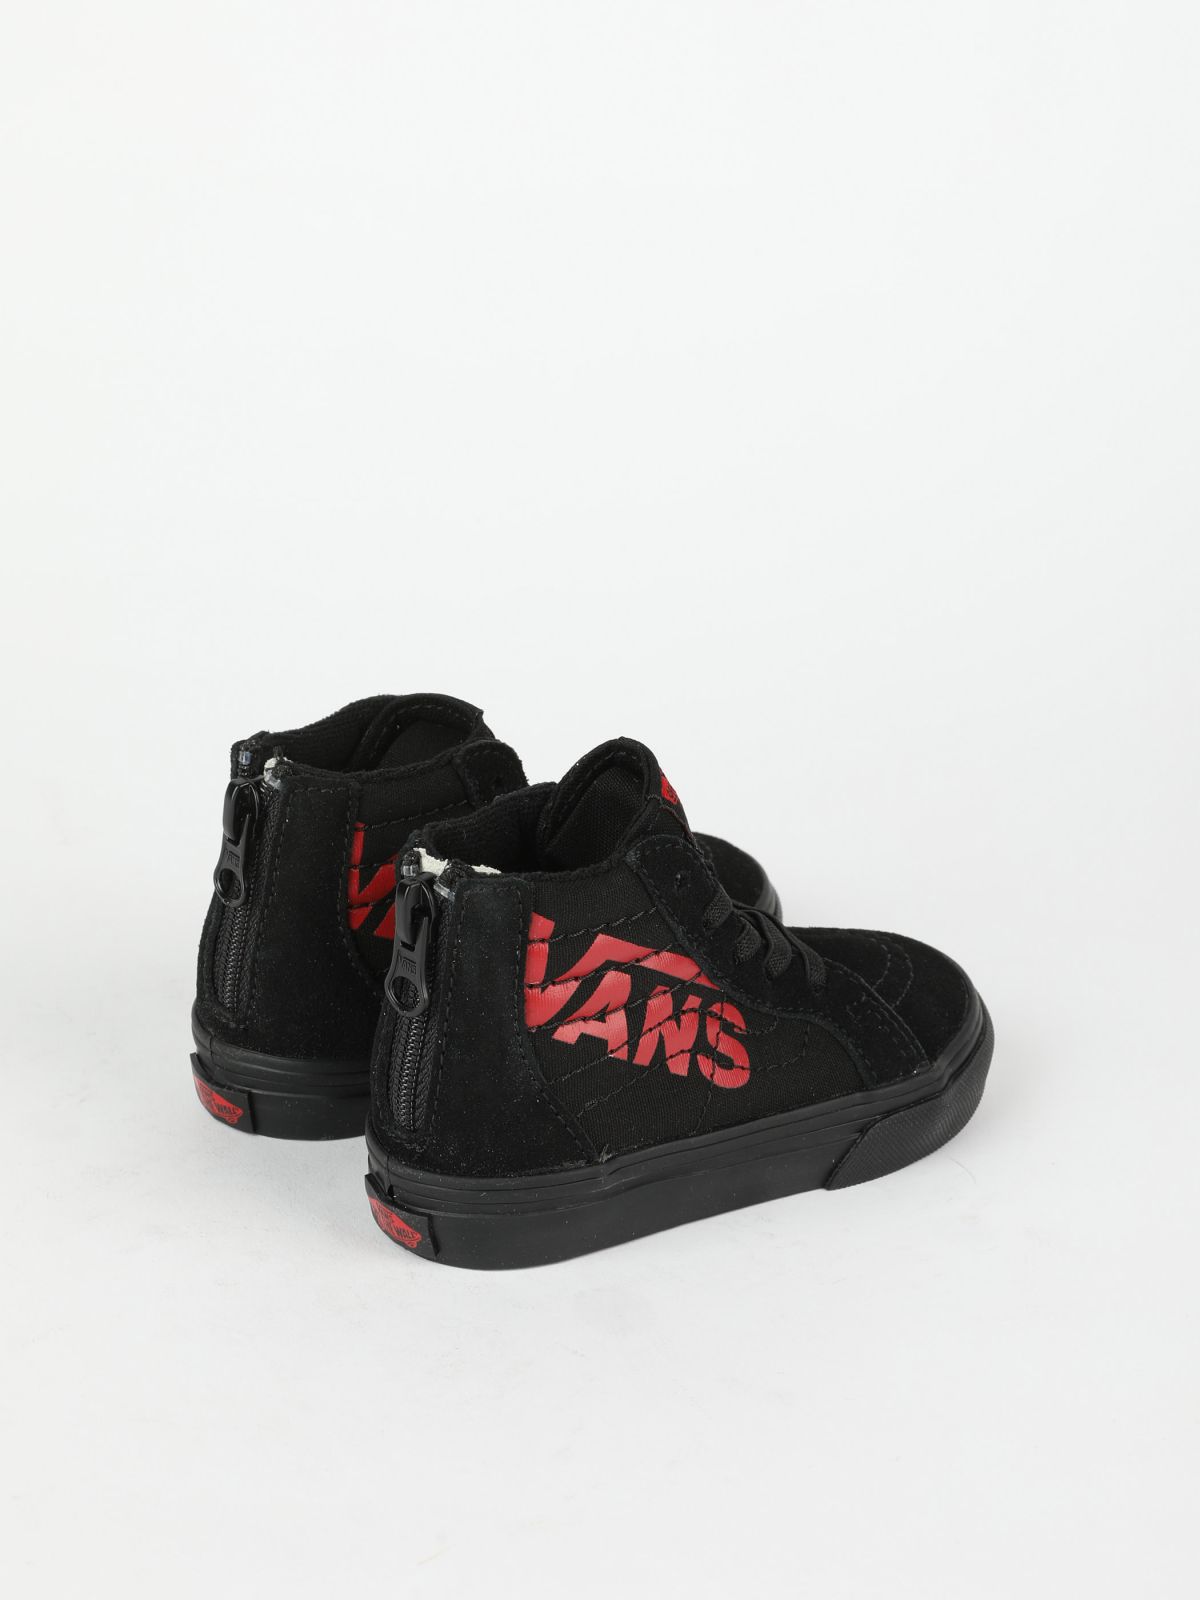  נעלי סניקרס עם לוגו VANS / בייבי בנים של VANS